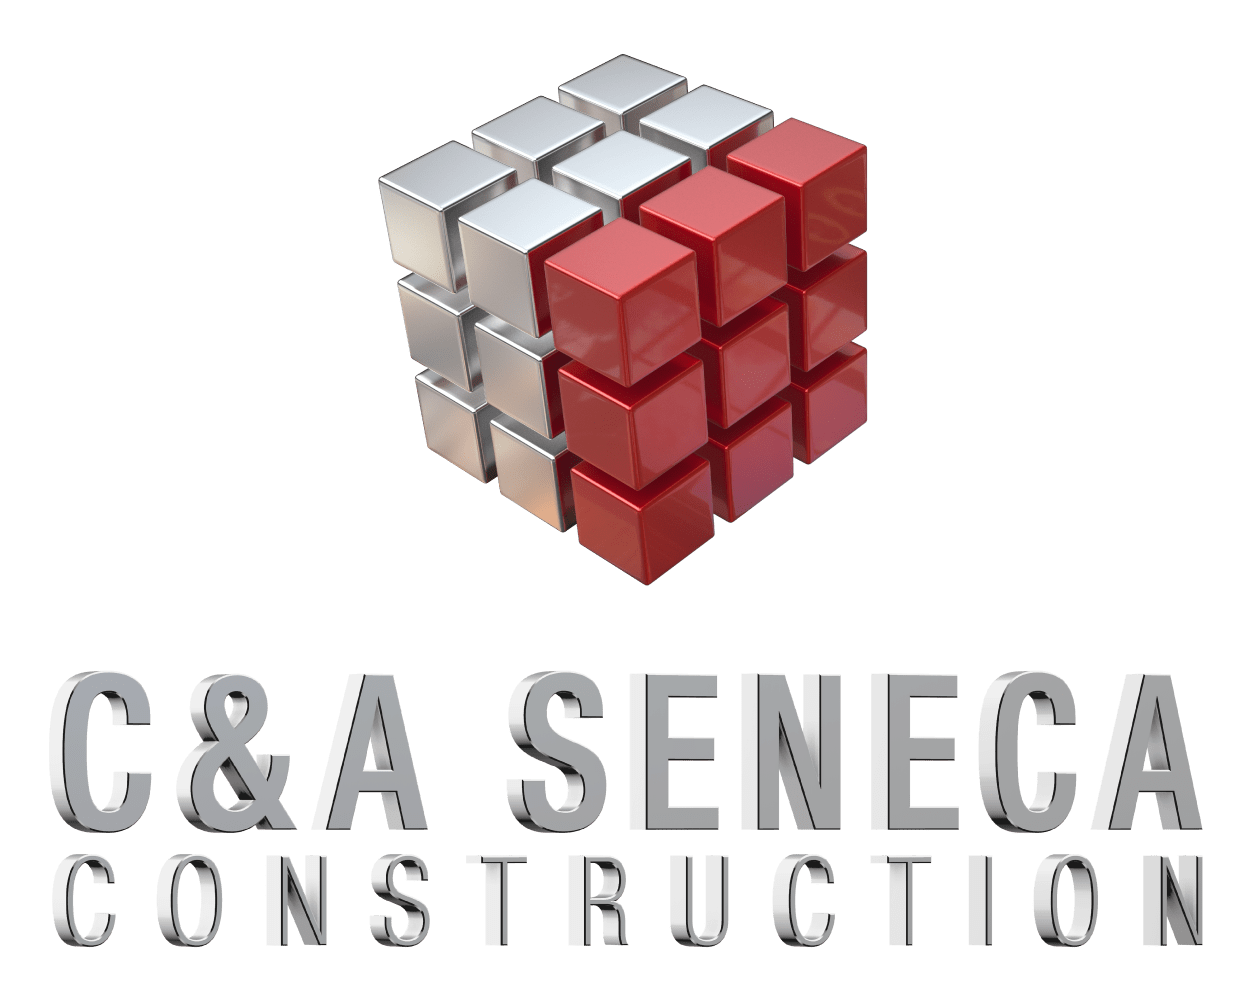 C&A Seneca Construction 190